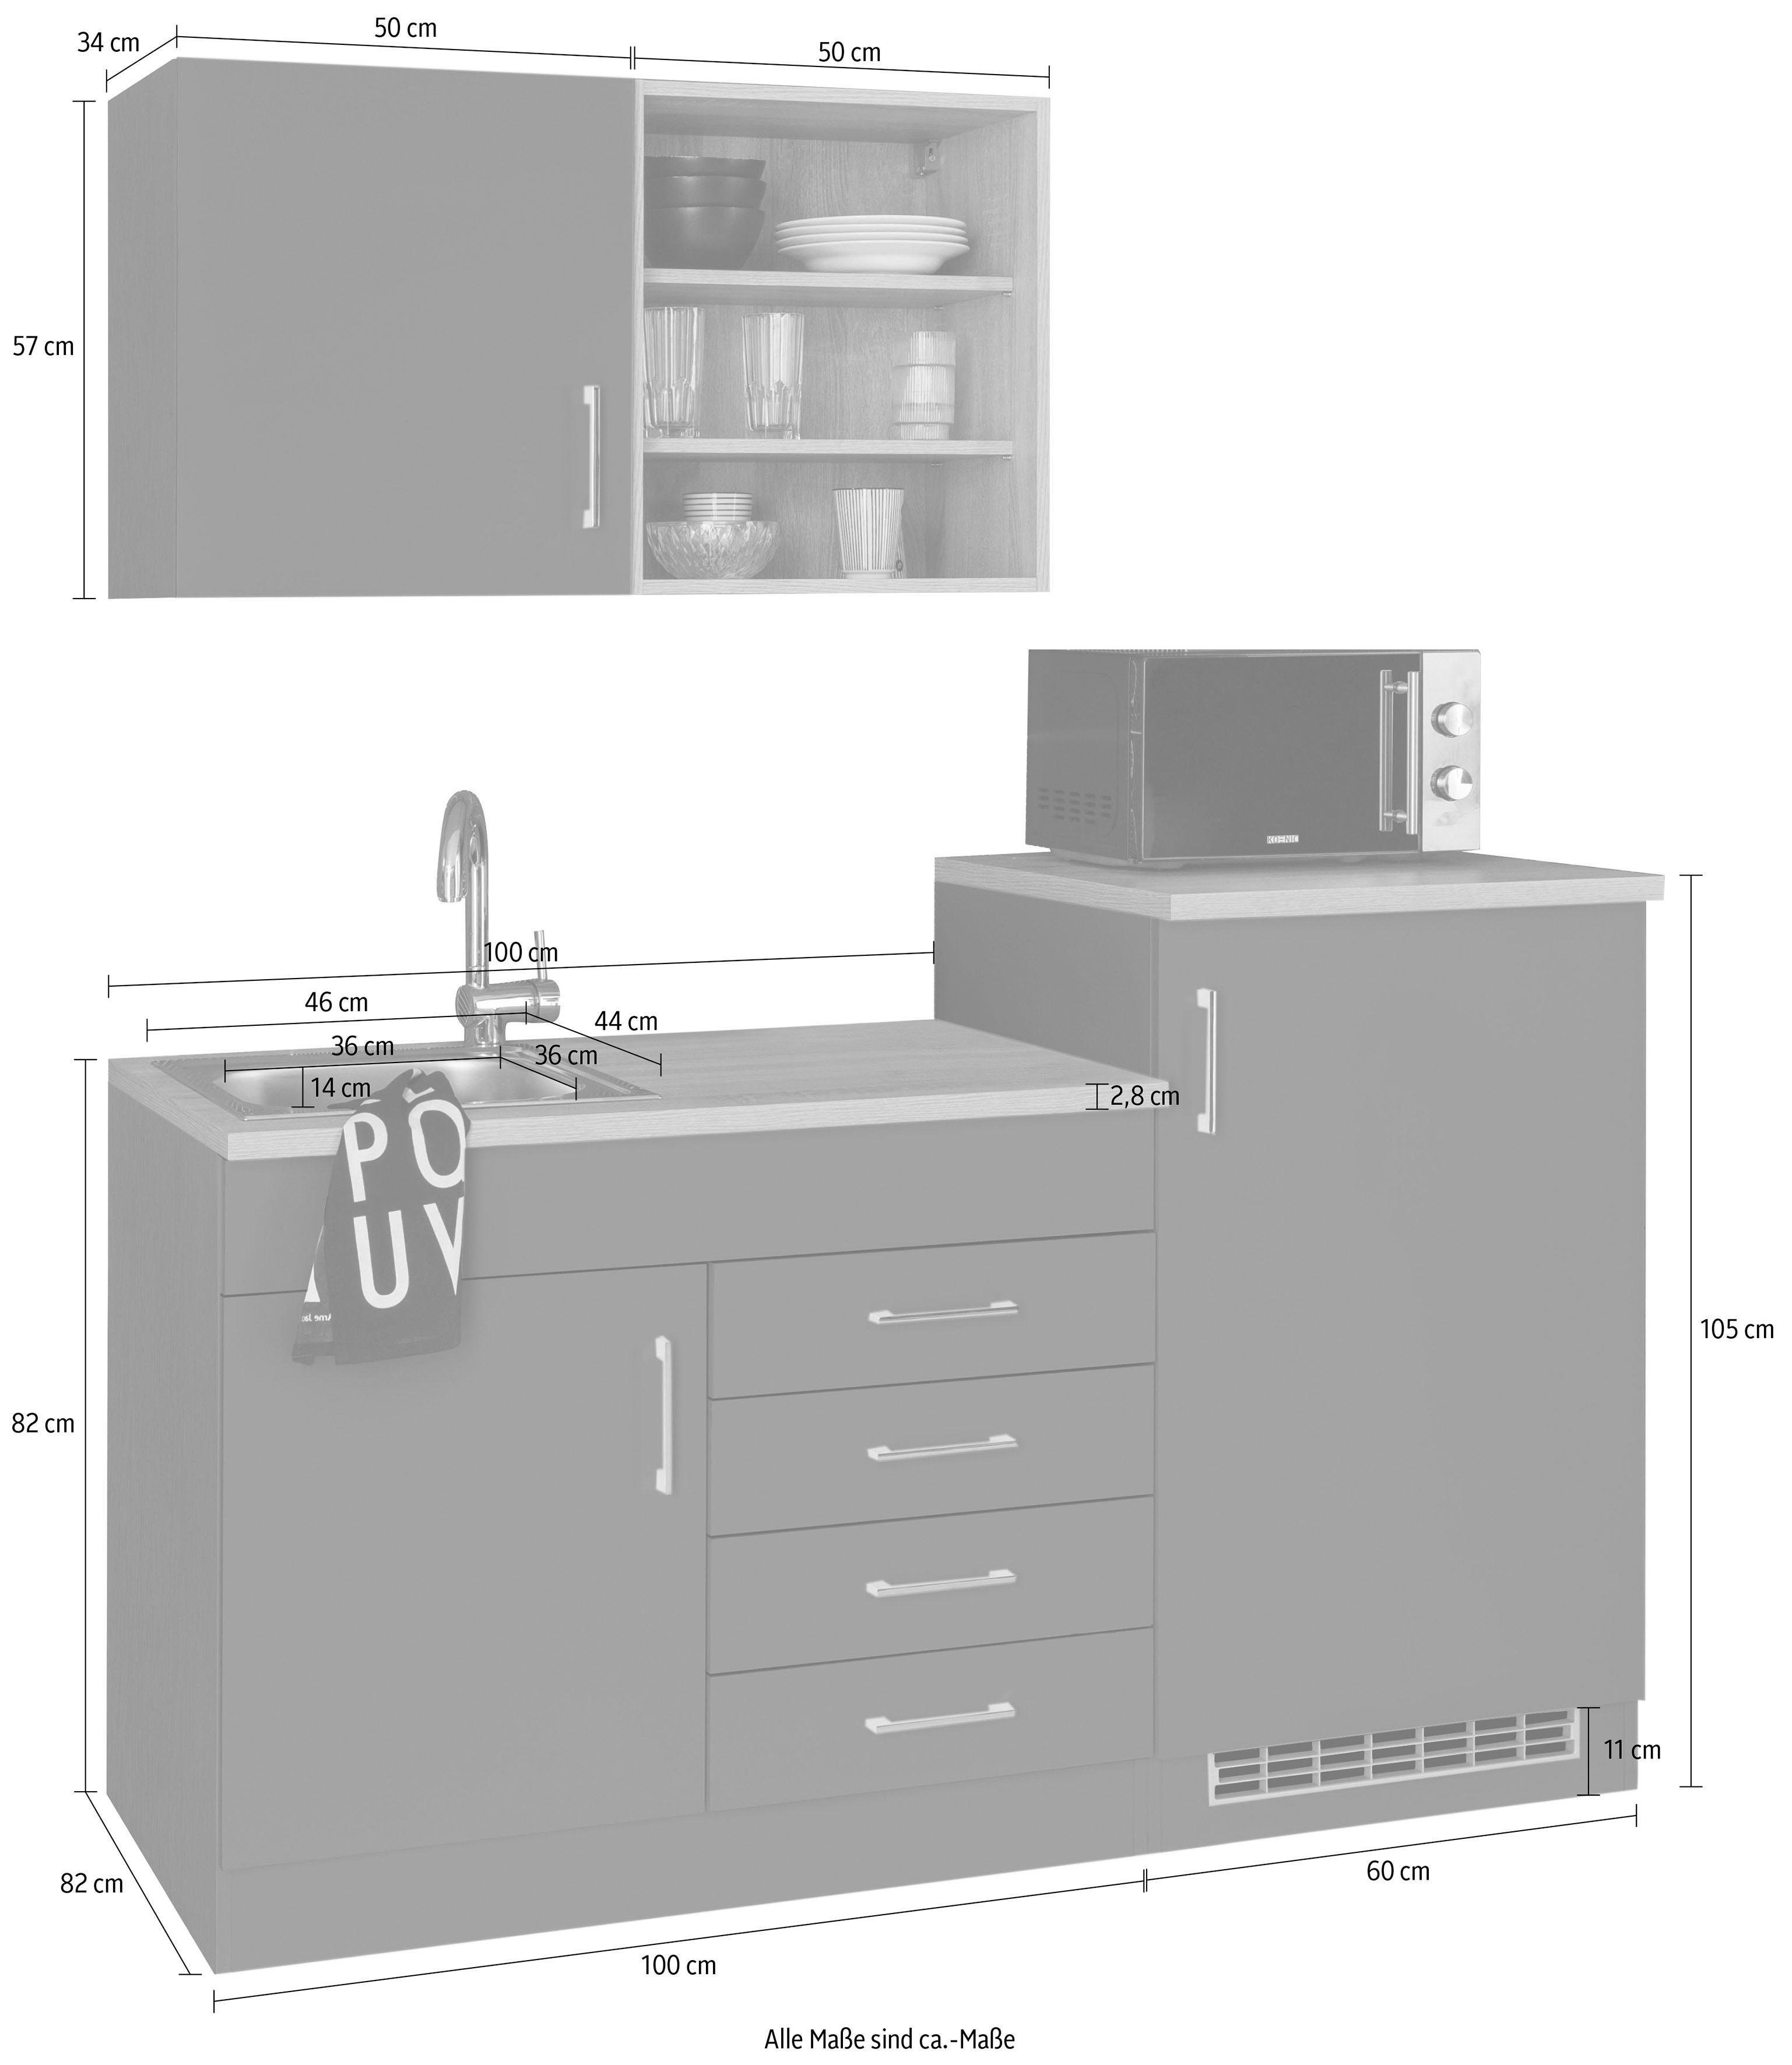 HELD 160 cm, MÖBEL matt-eiche | Küche graphit/grau E-Geräten mit anthrazit sonoma | Breite graphit Mali,